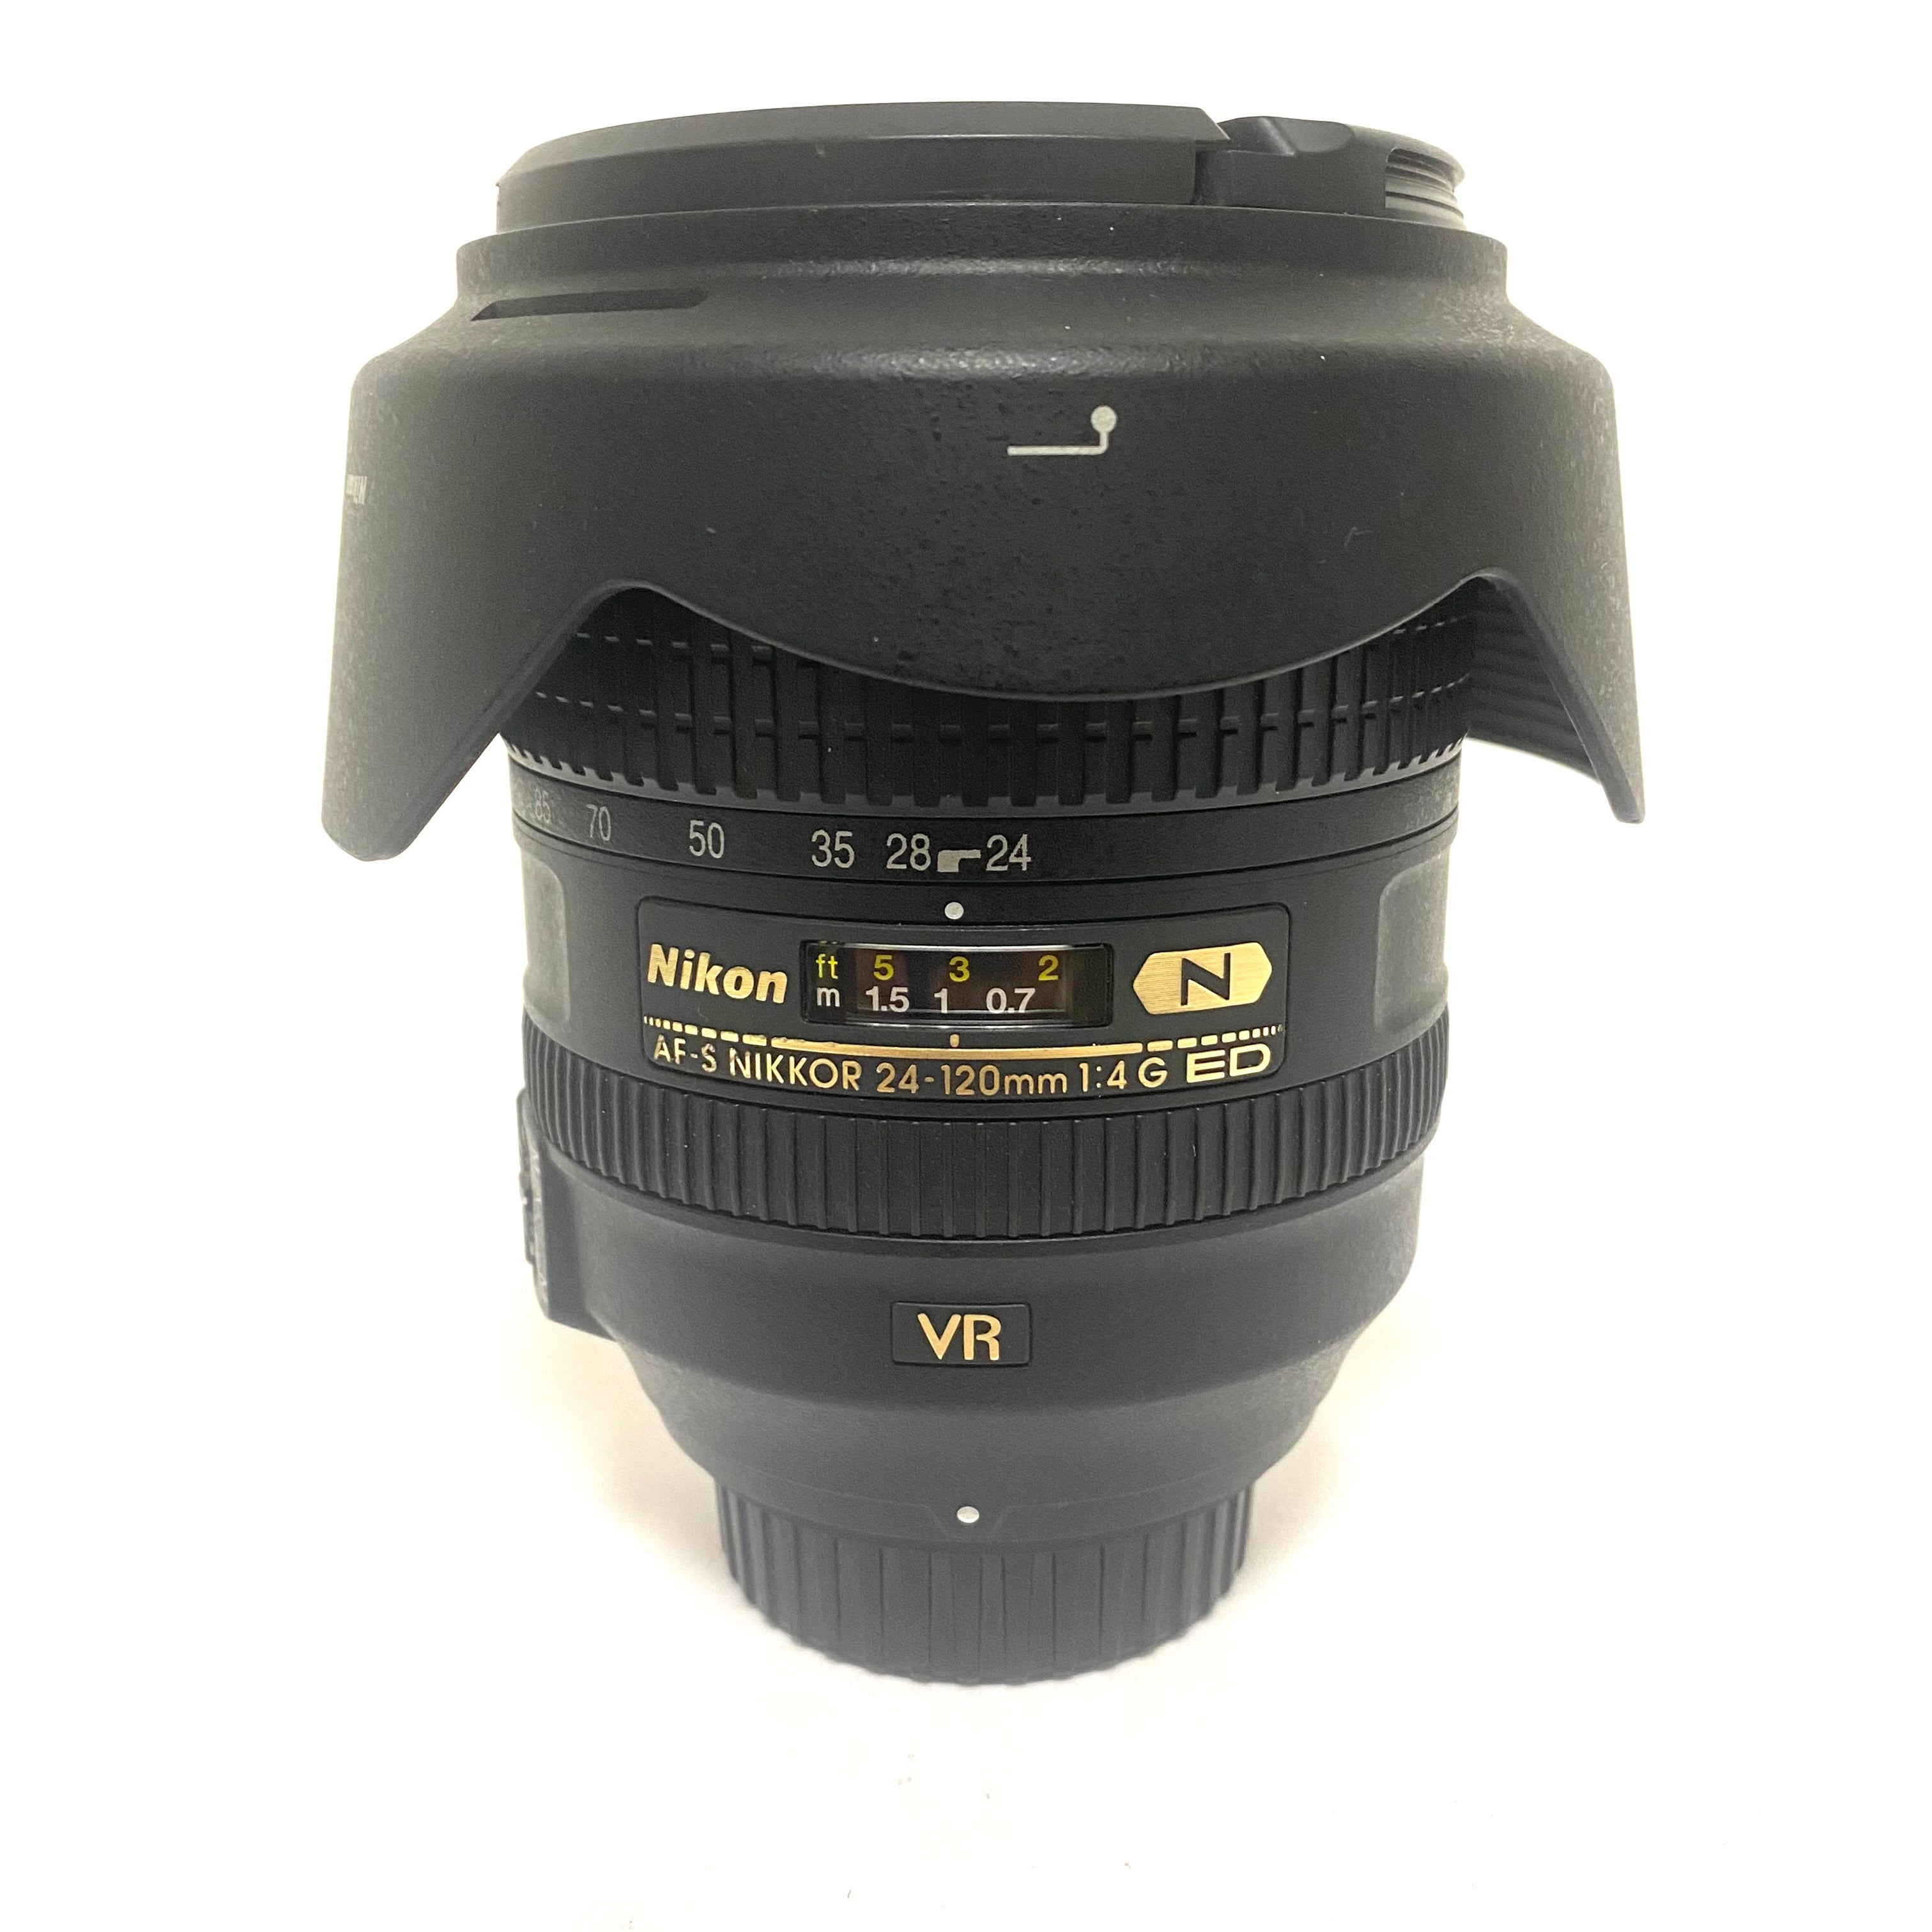 Nikon Af-s 24-120mm 1:4 G ED usato